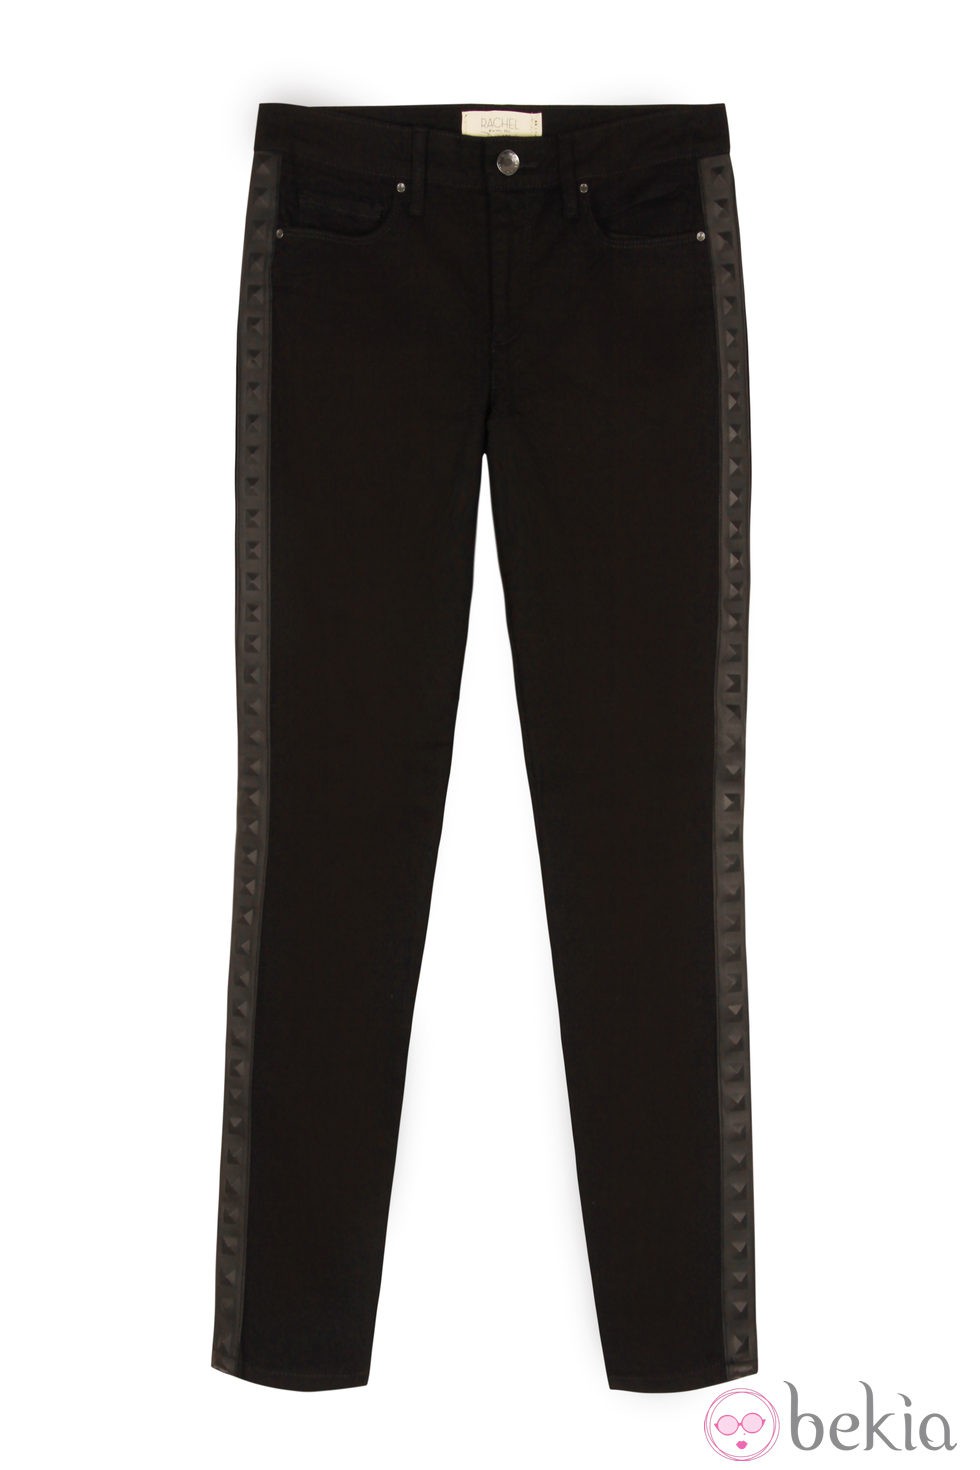 Pantalón negro con franja lateral de la colección primavera/verano 2014 de Rachel Roy